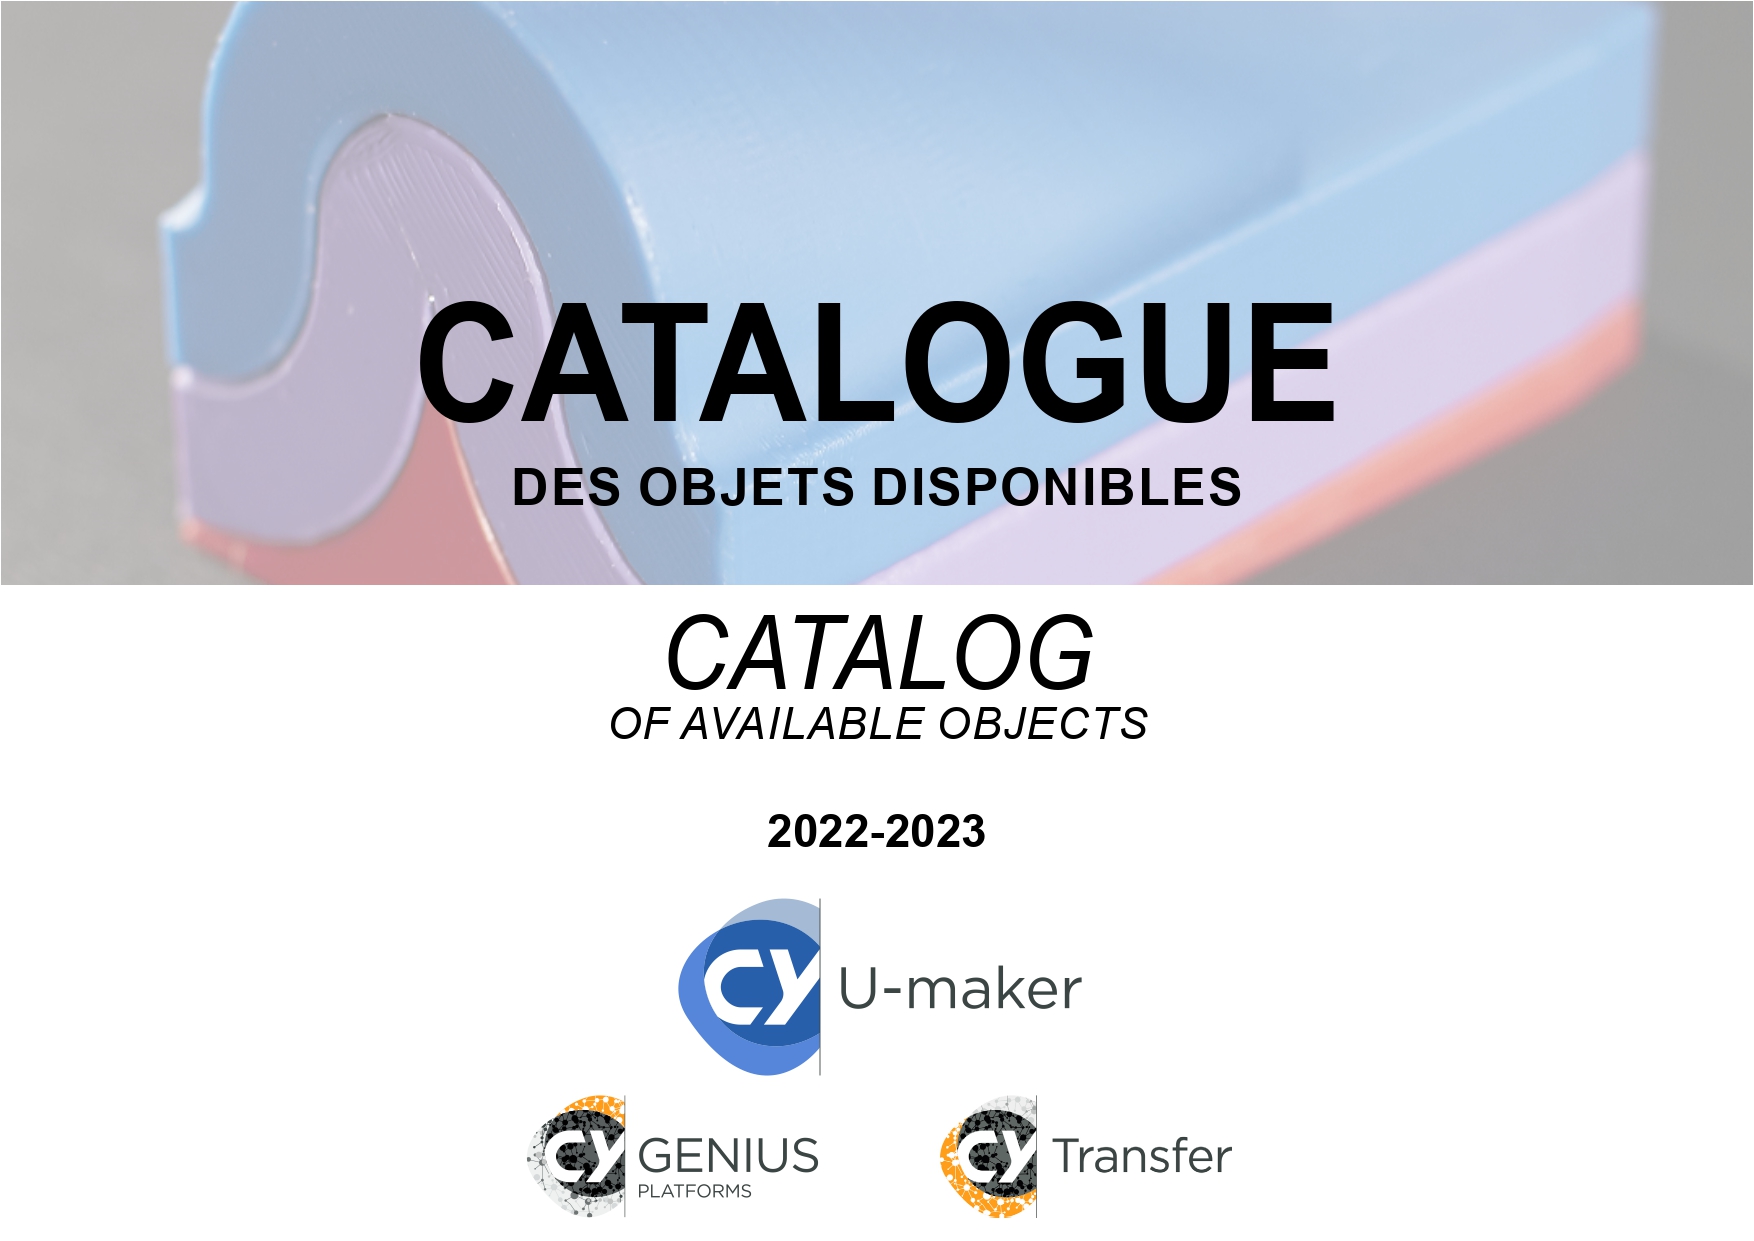 Catalogue de vente CY U-maker 